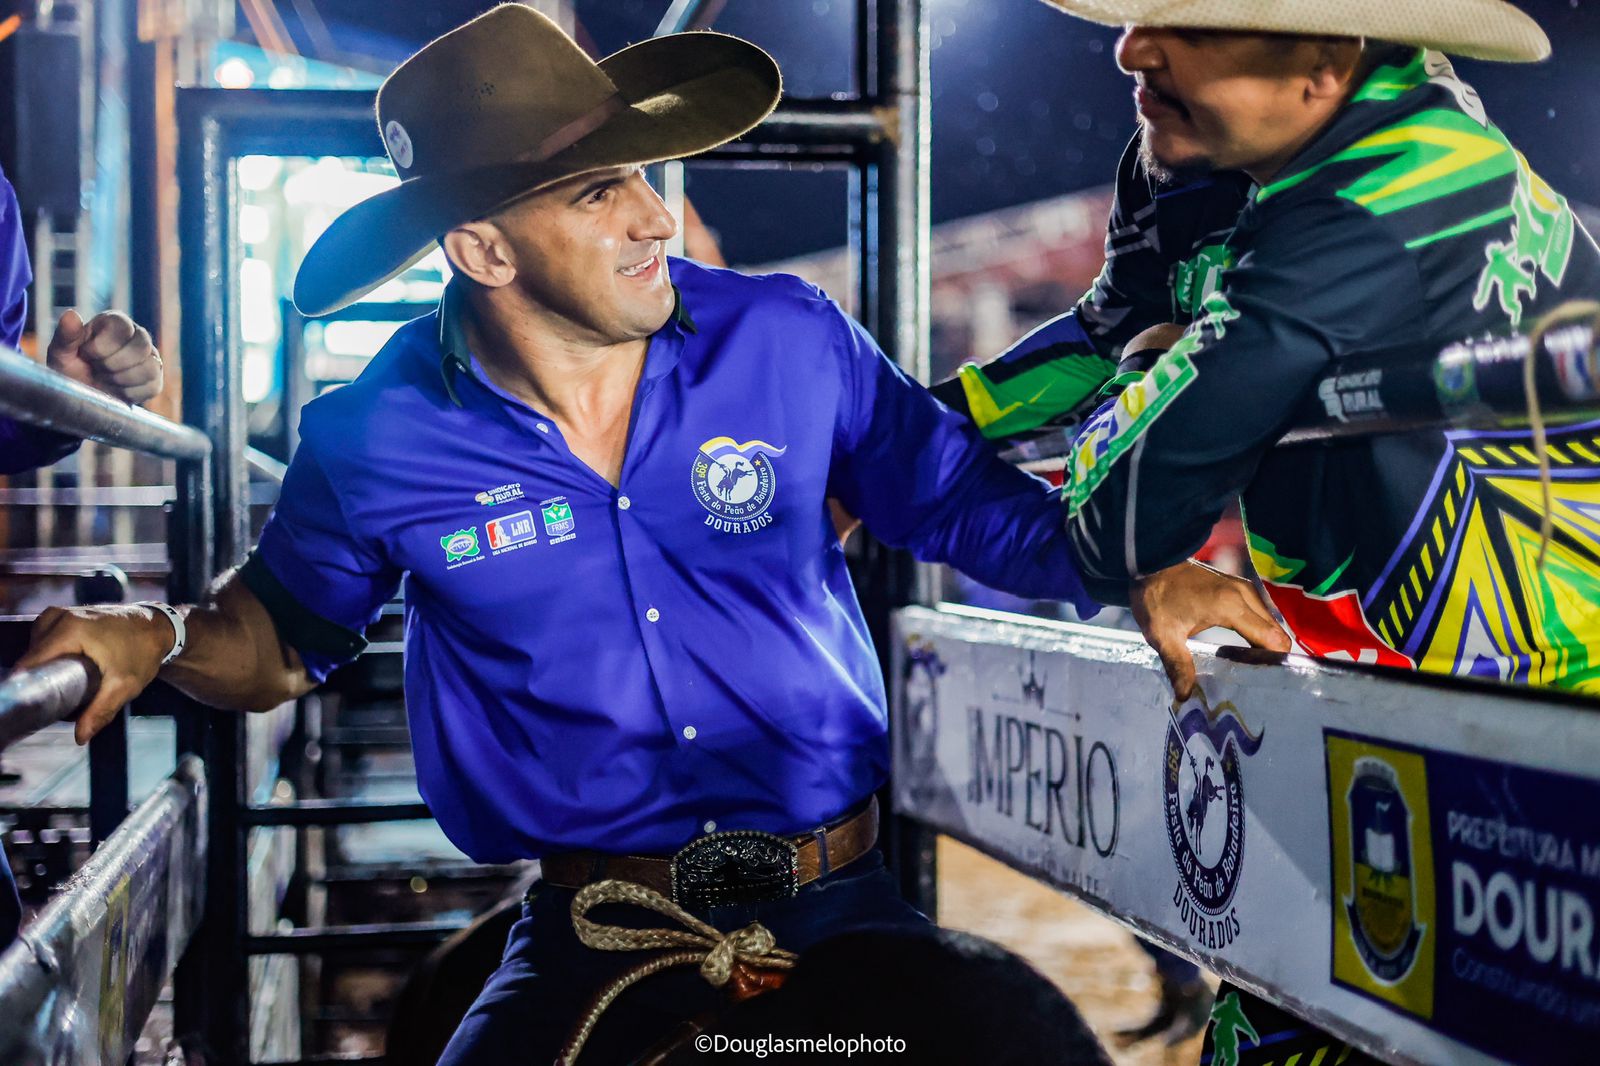 Fernando Rufino, o “Cowboy de Aço”, vence o Desafio do Bem durante o rodeio de Dourados